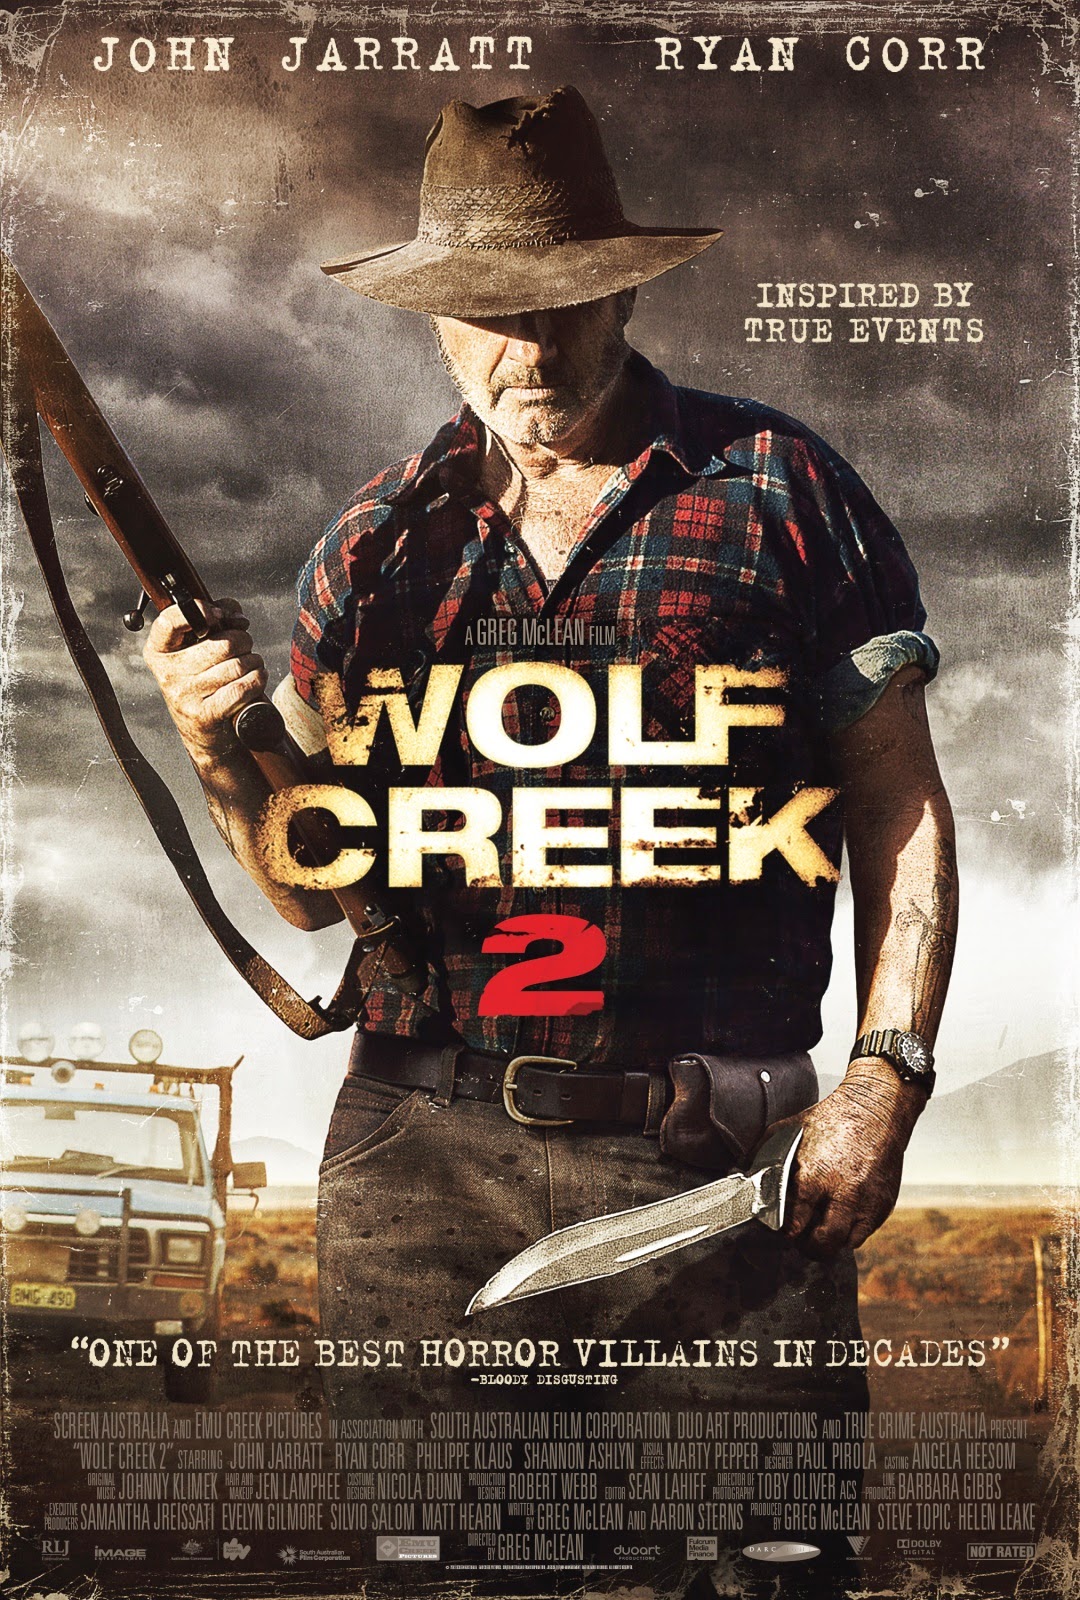 Xem Phim Thung Lũng Sói 2 - Wolf Creek 2 HD Vietsub mien phi - Poster Full HD